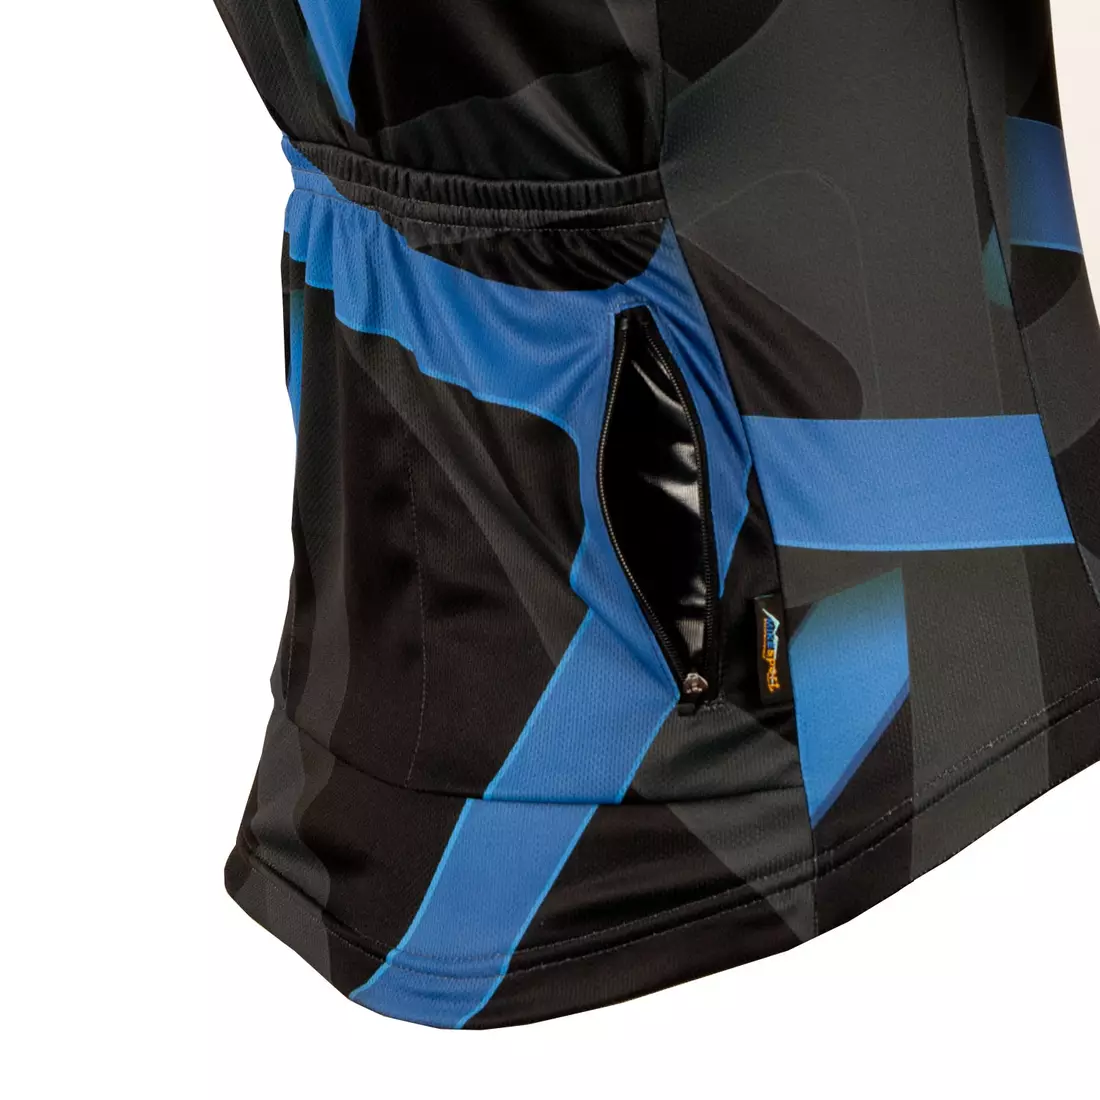 KAYMAQ DESIGN M36 pánsky cyklistický dres, krátky rukáv, modrá